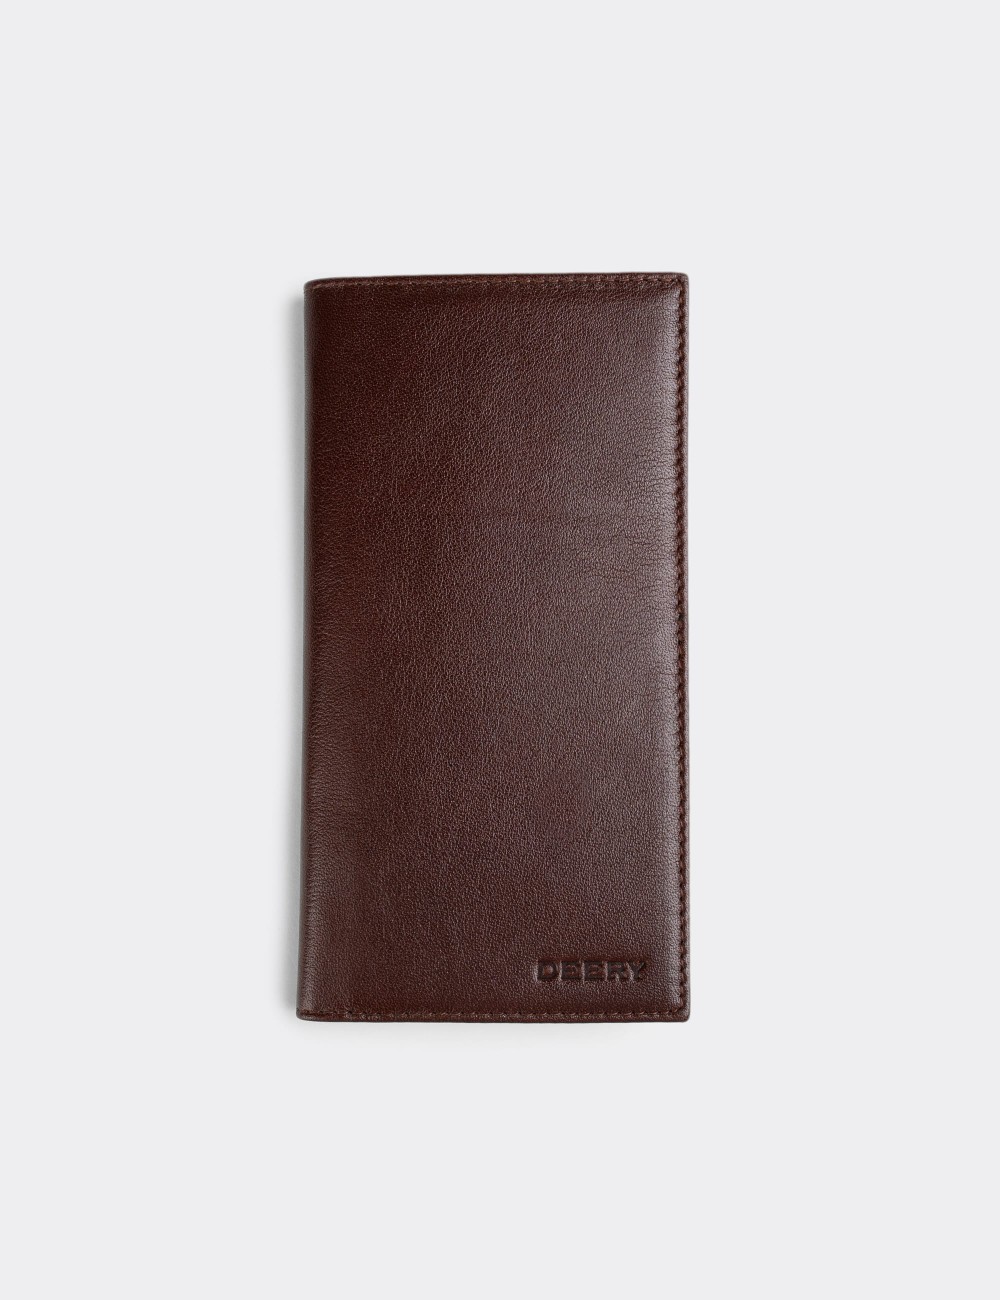  Leather Brown Men's Wallet - 00802MKHVZ01